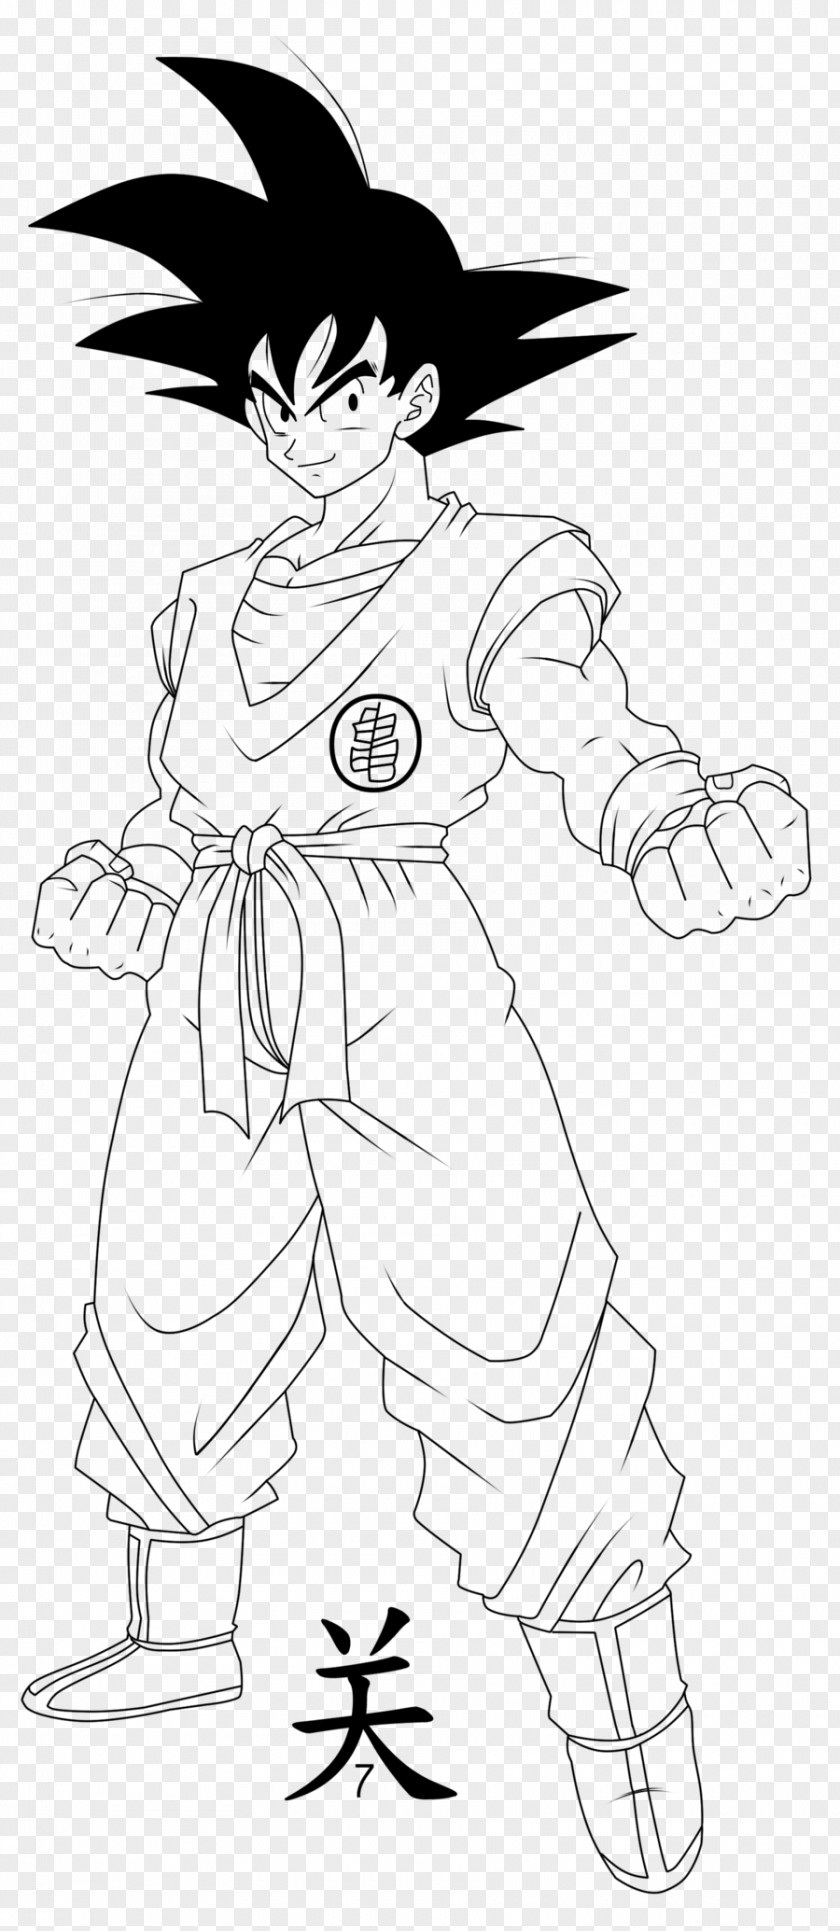 Goku Line Art Vegeta Dragon Ball Character PNG